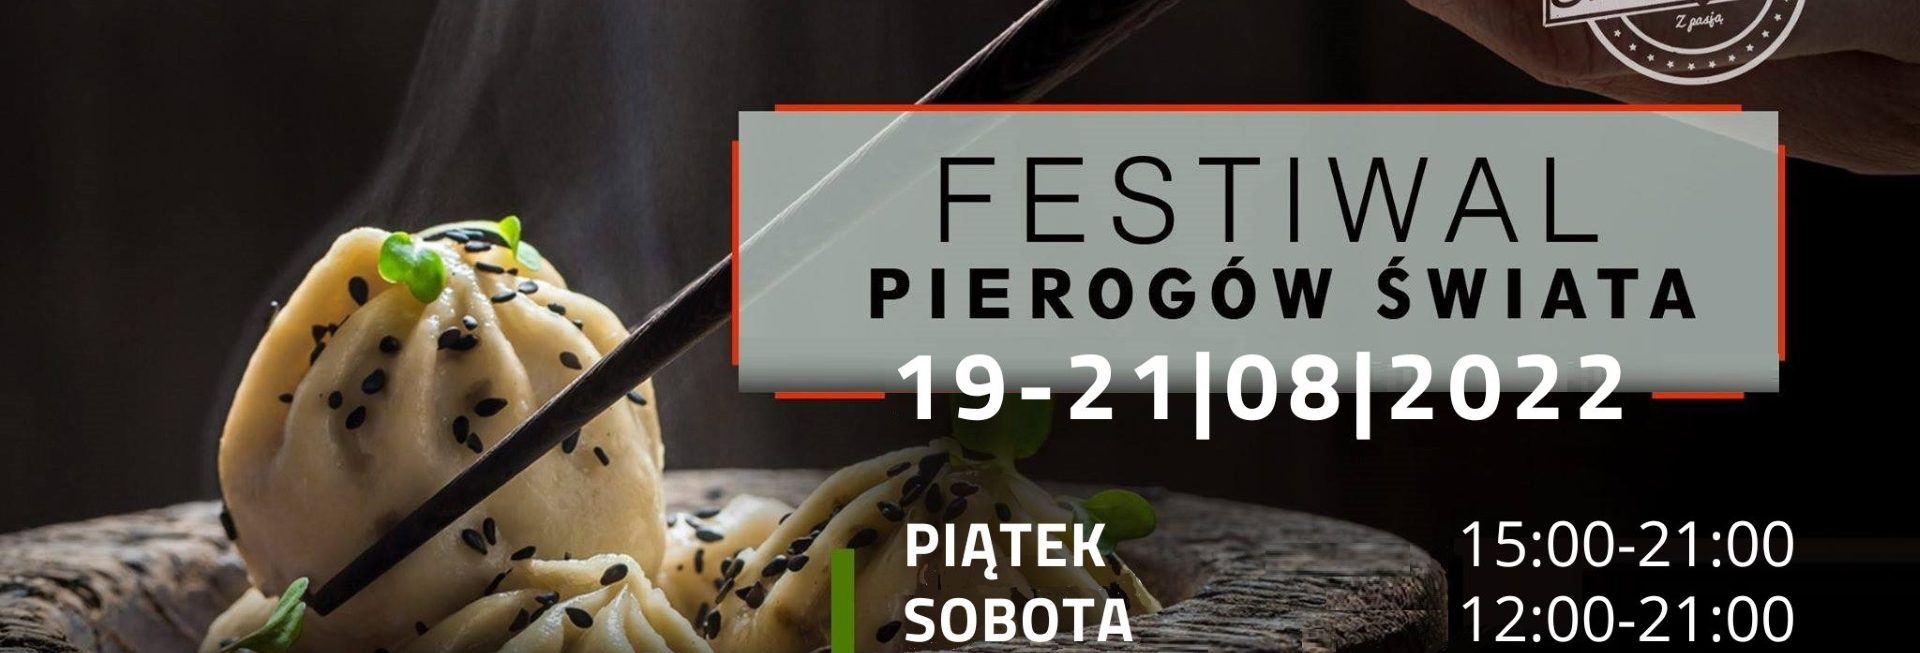 Plakat zapraszający do Szczytna na Festiwal Pierogów Świata Szczytno 2022.